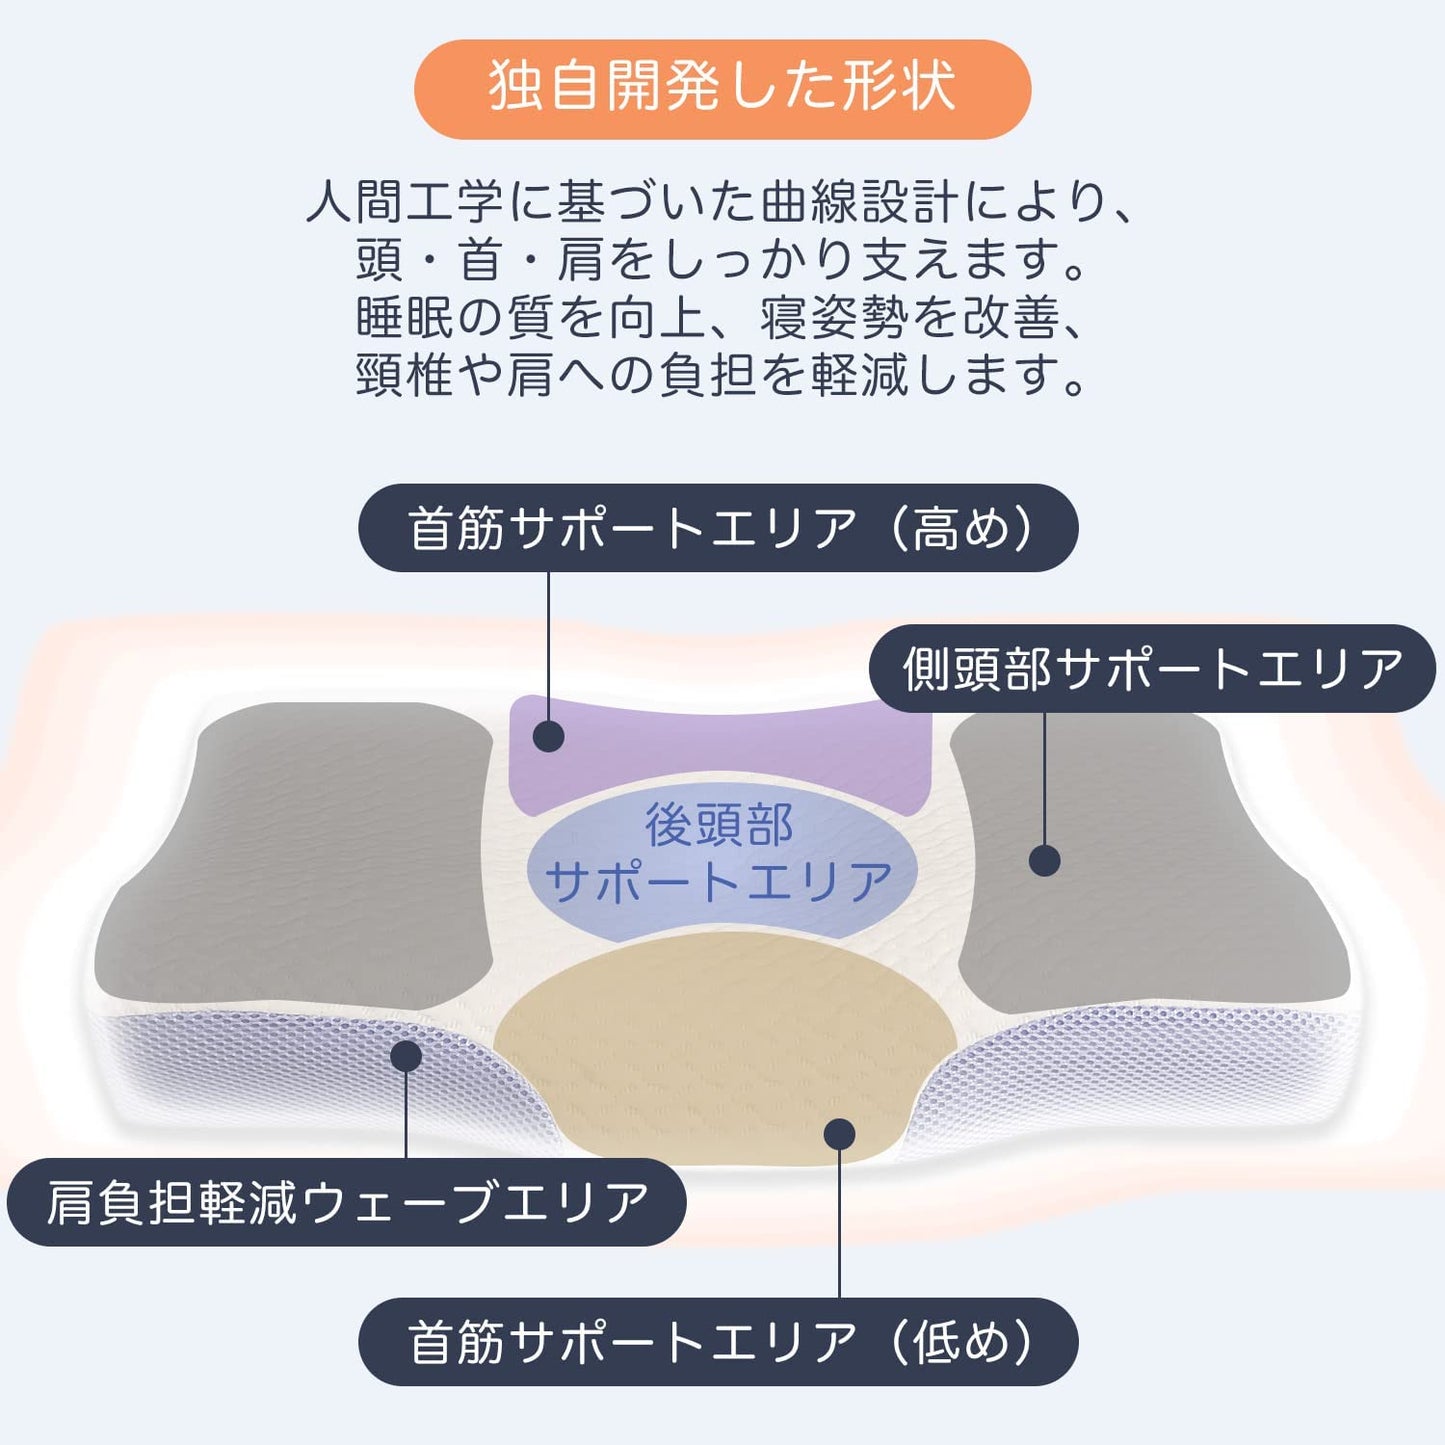 Memory Foam Pillow (Made in Japan)